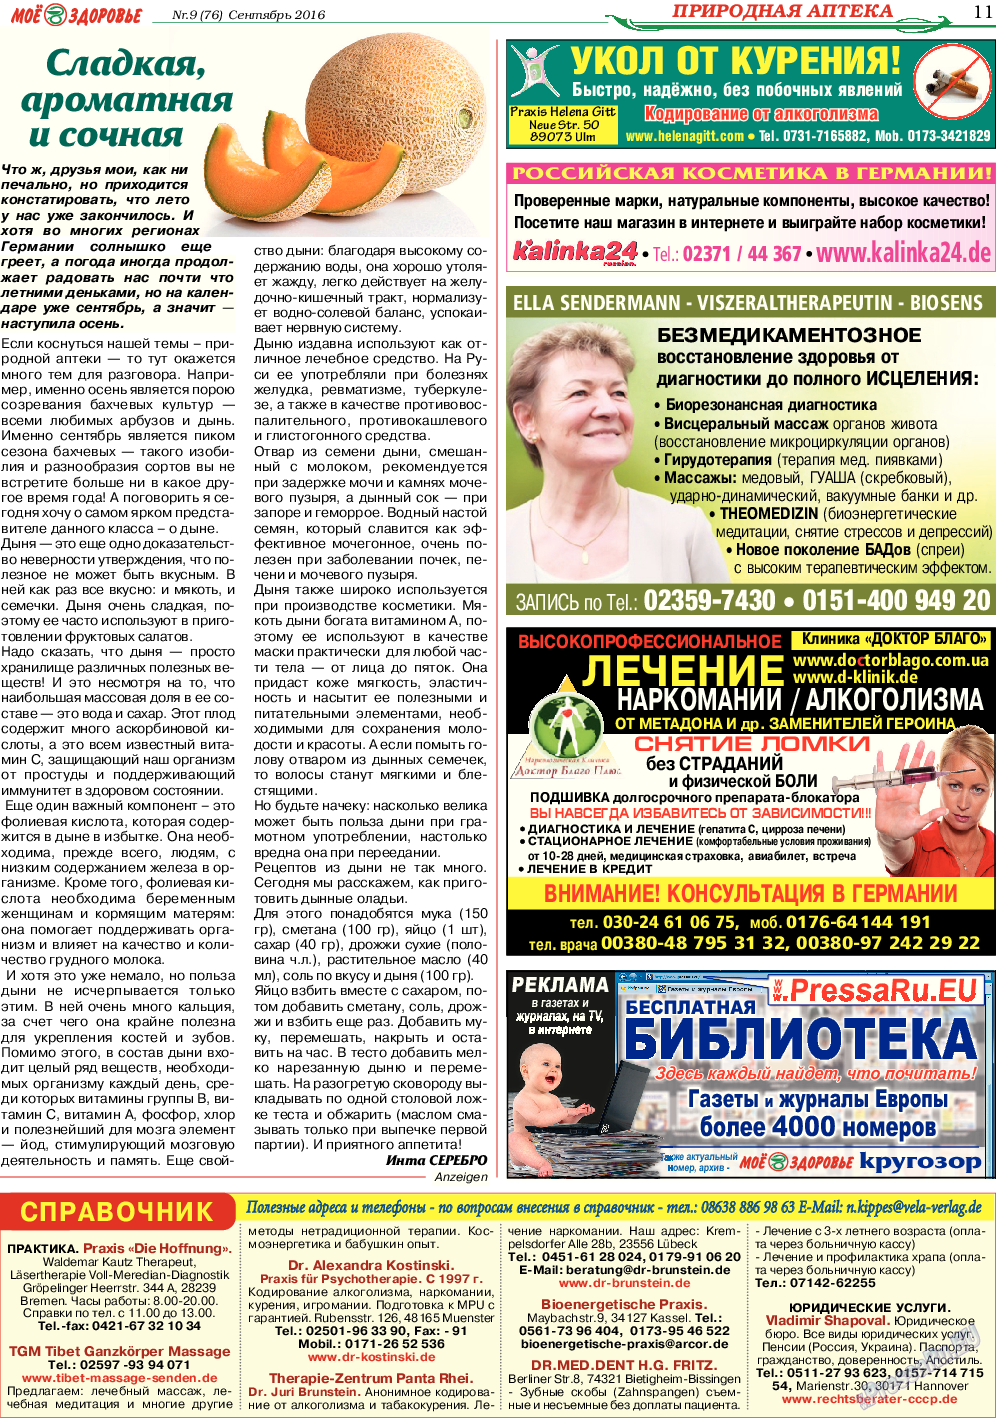 Кругозор, газета. 2016 №9 стр.11